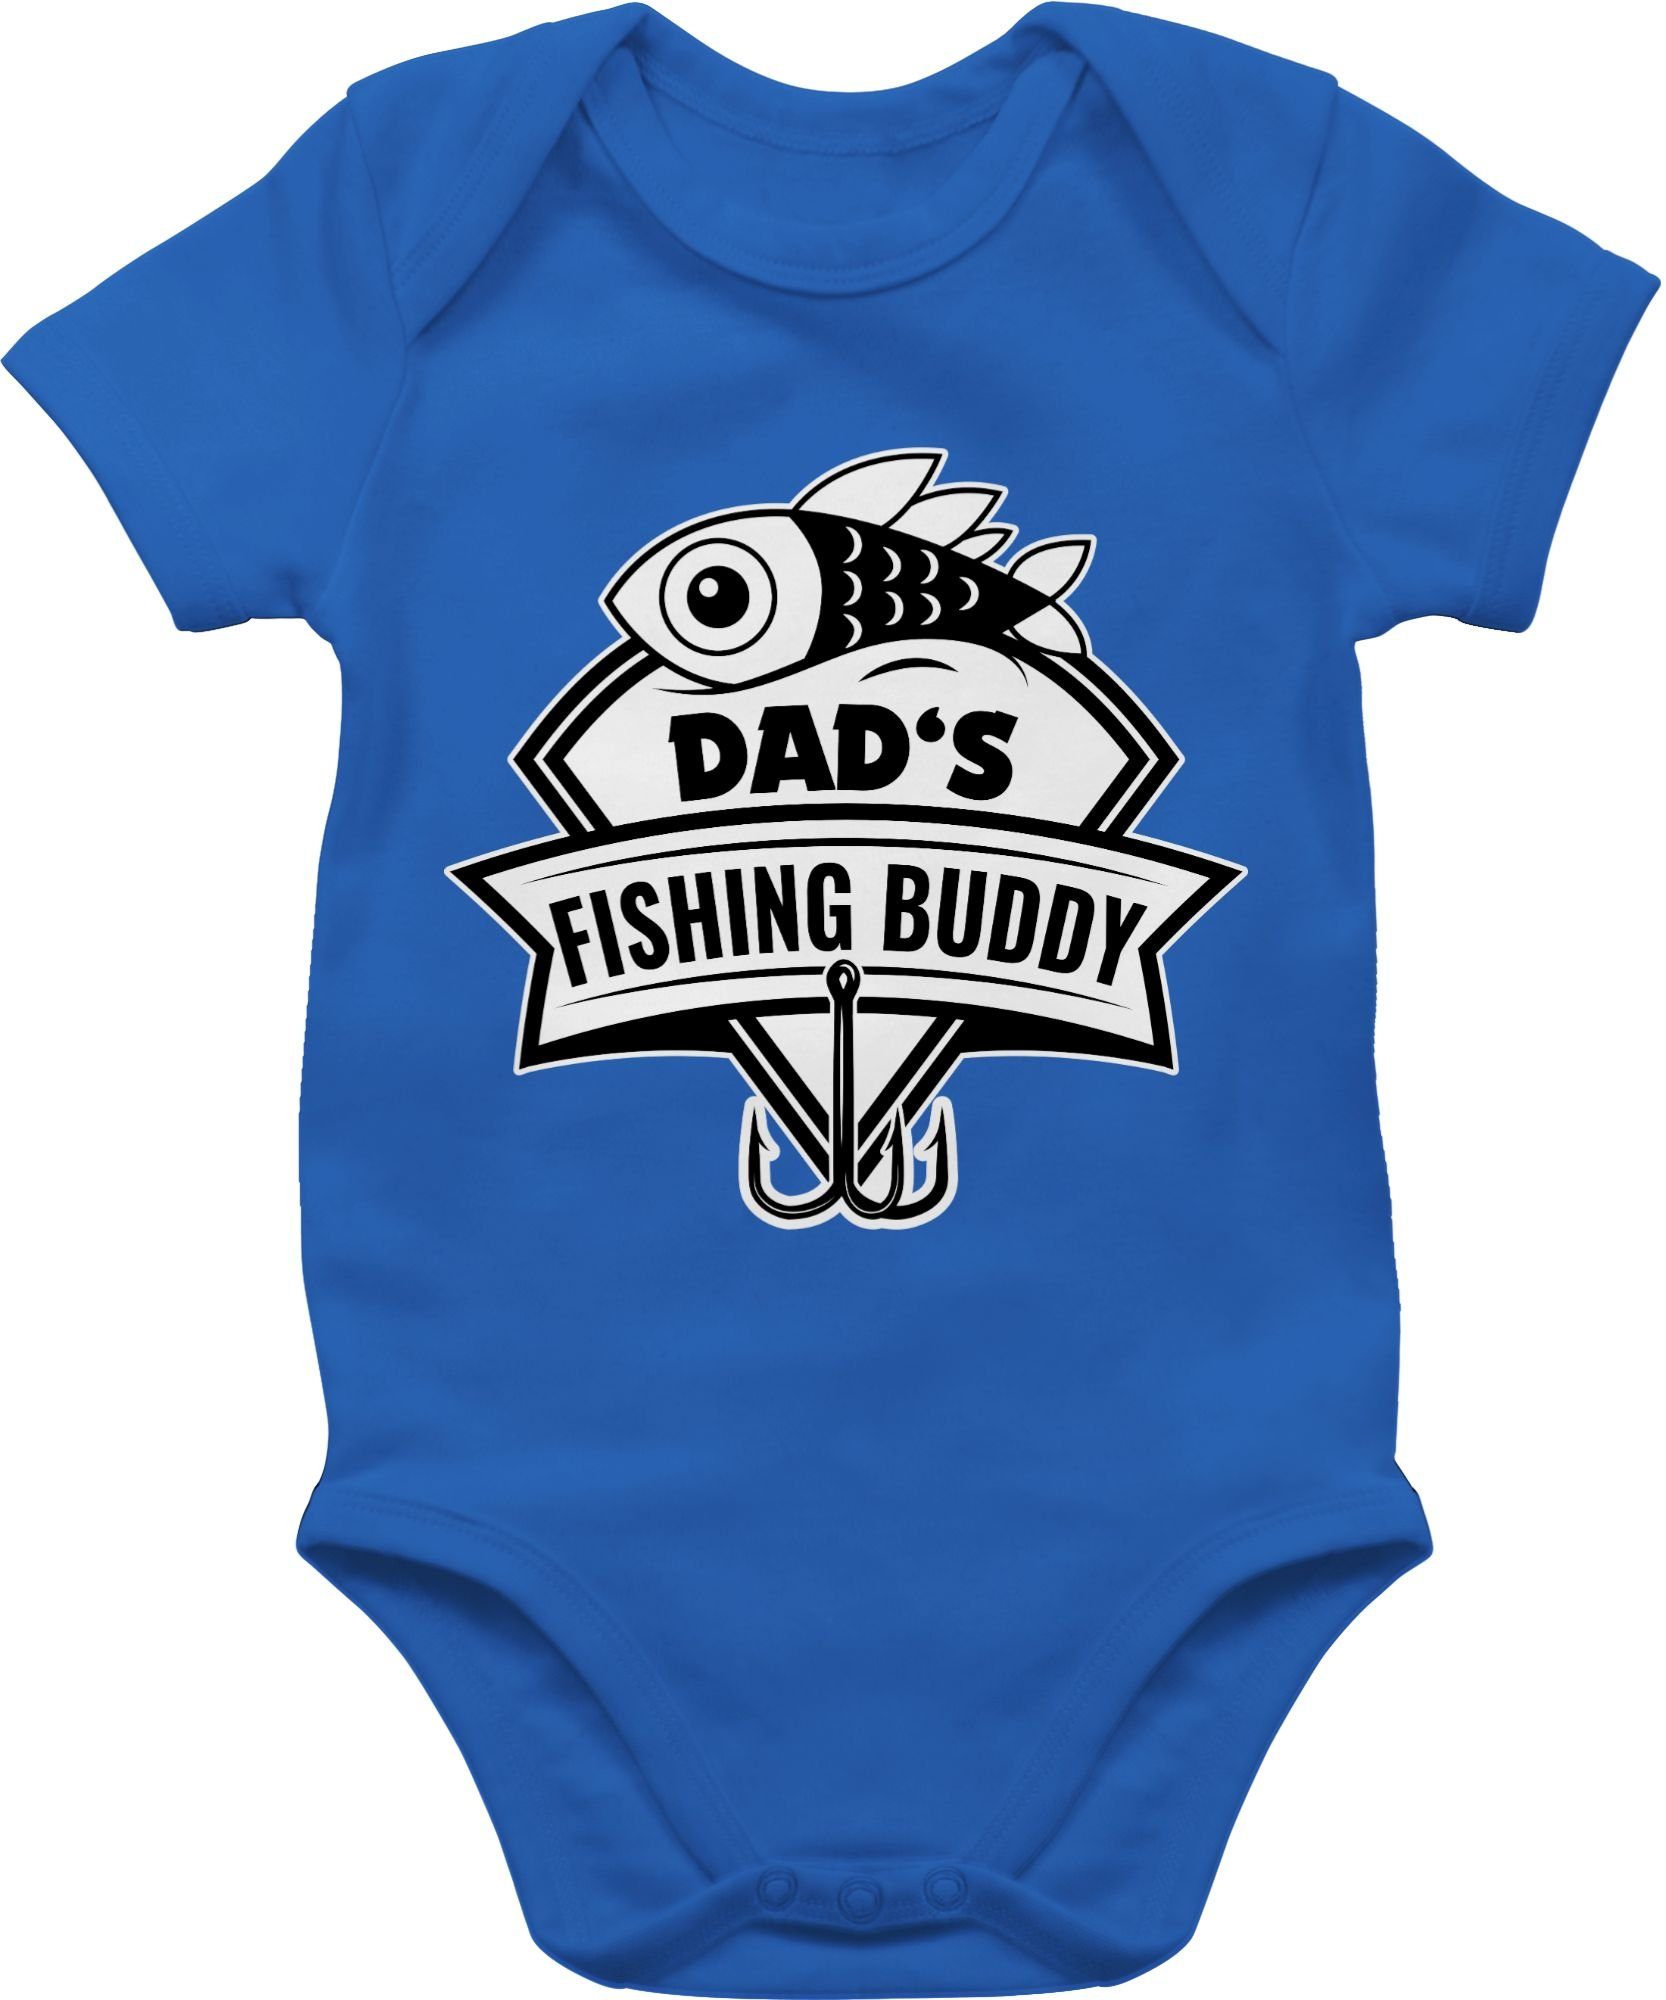 Online-Großhandelspreise Shirtracer Shirtbody Dad's fishing Buddy Baby Royalblau 2 Geschenk Vatertag